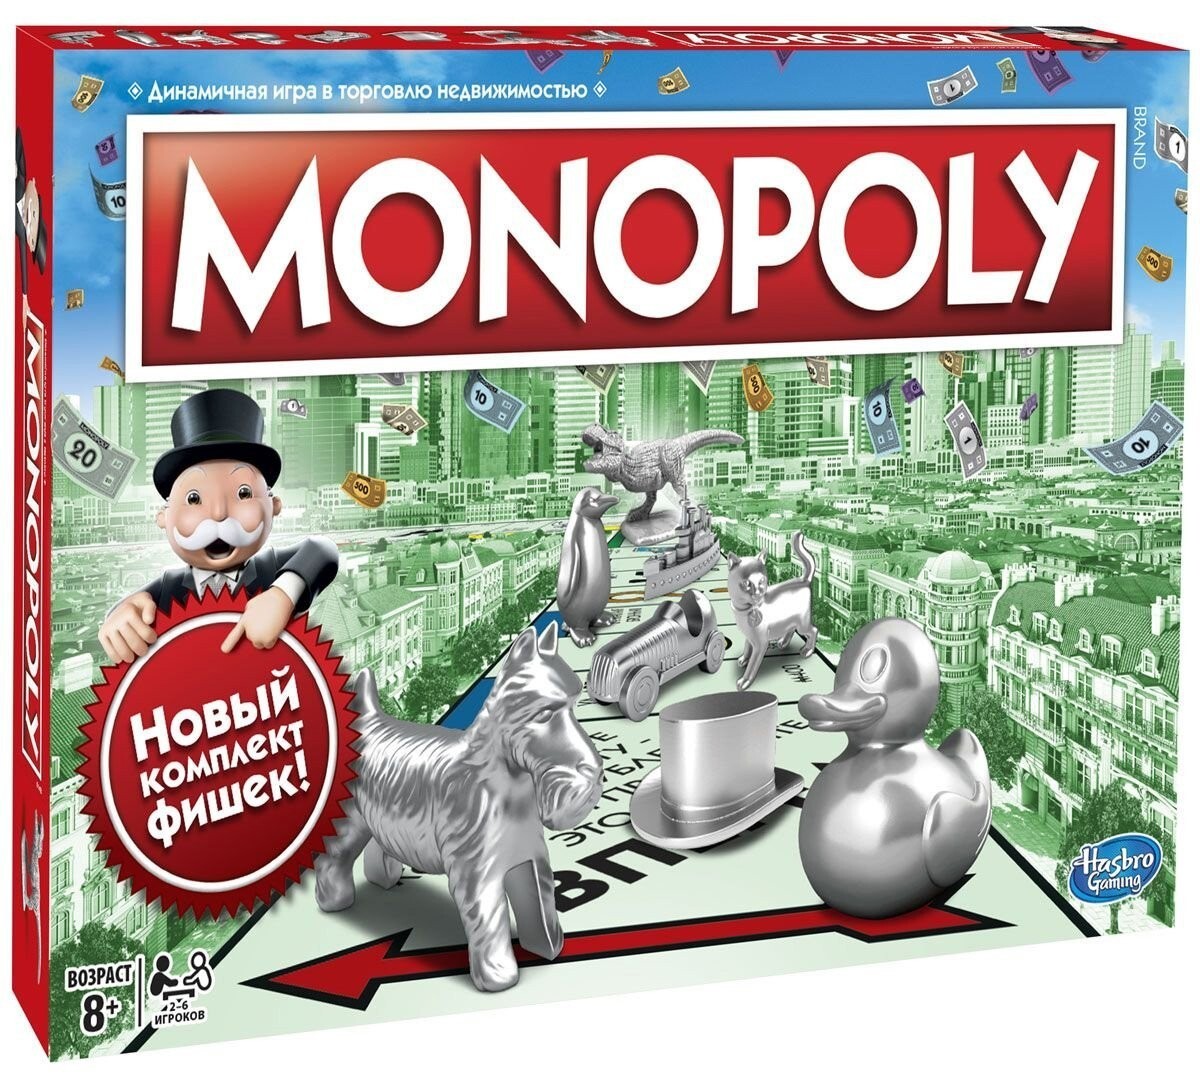 Monopoly играть. Настольная игра Monopoly классическая обновленная c1009. Игры Хасбро Монополия. Монополия классическая Хасбро. Монополия Hasbro настольная игра.